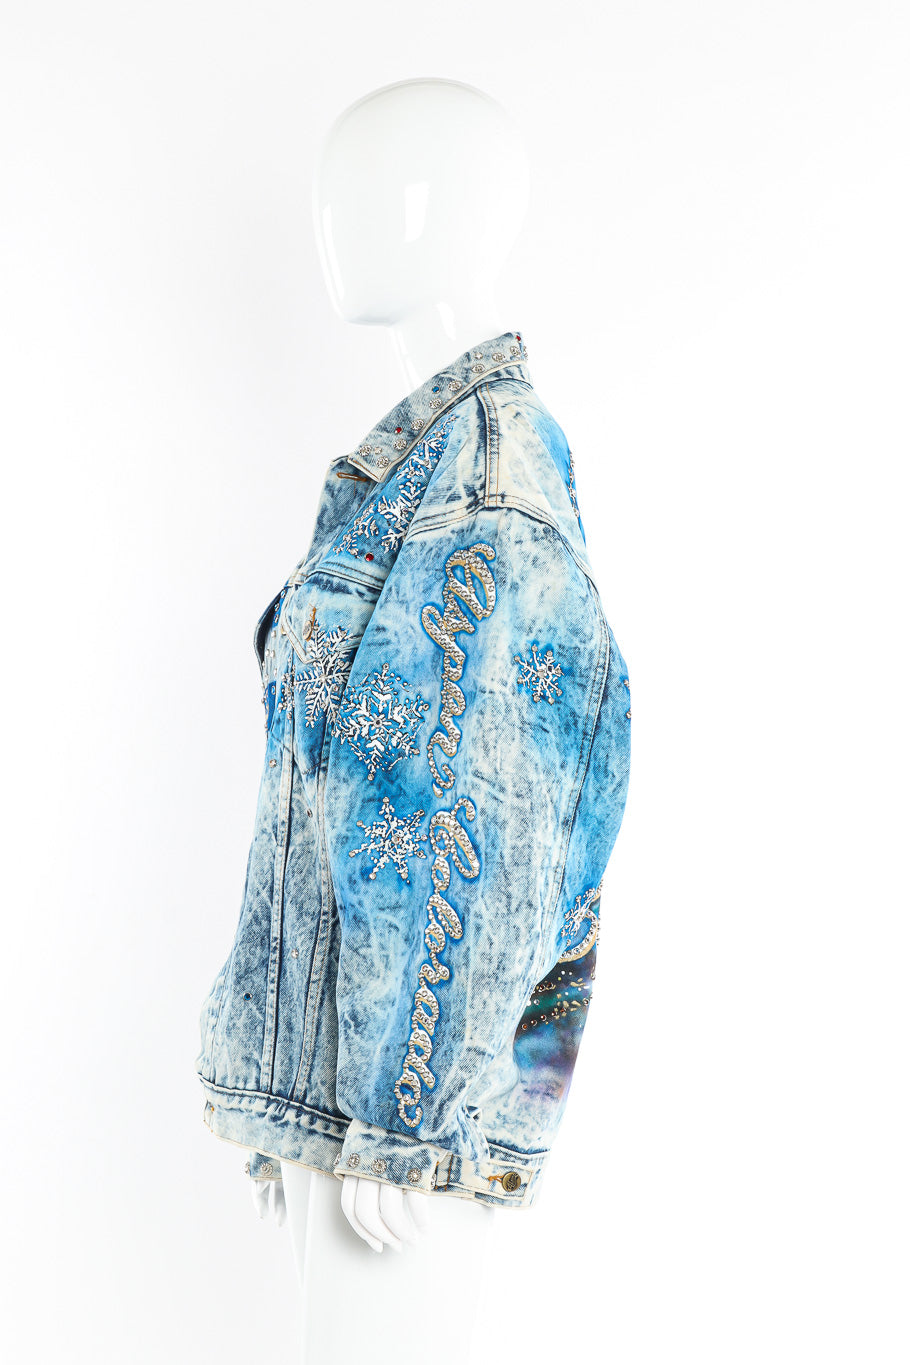 Aspen Colorado jacket by Tony Alamo mannequin side @recessla